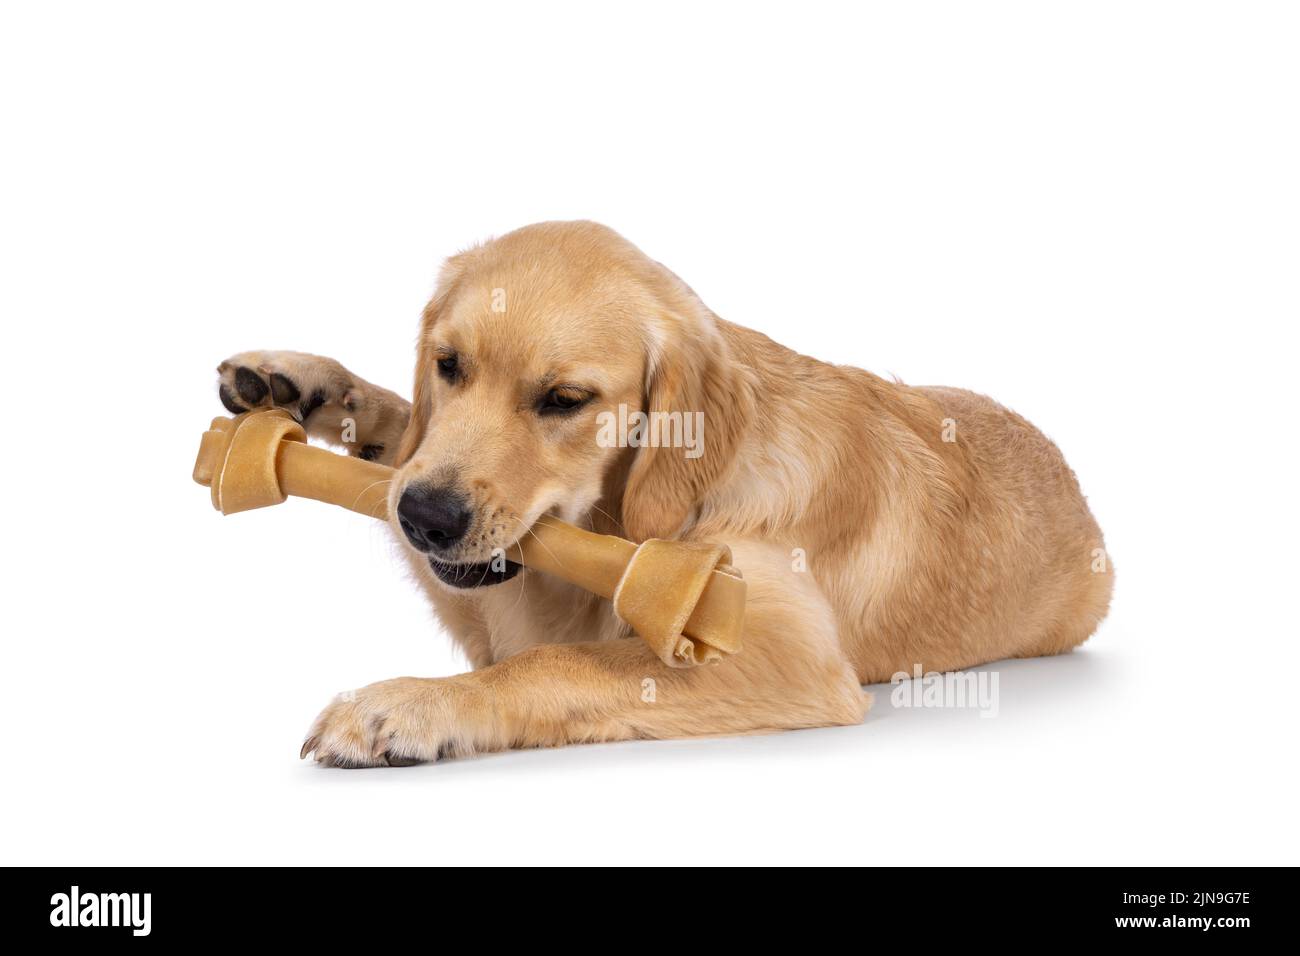 Freundlicher, 6 Monate alter Golden Retriever Hund, der sich flach mit Knochen im Mund niederlegt. Isoliert auf weißem Hintergrund. Stockfoto